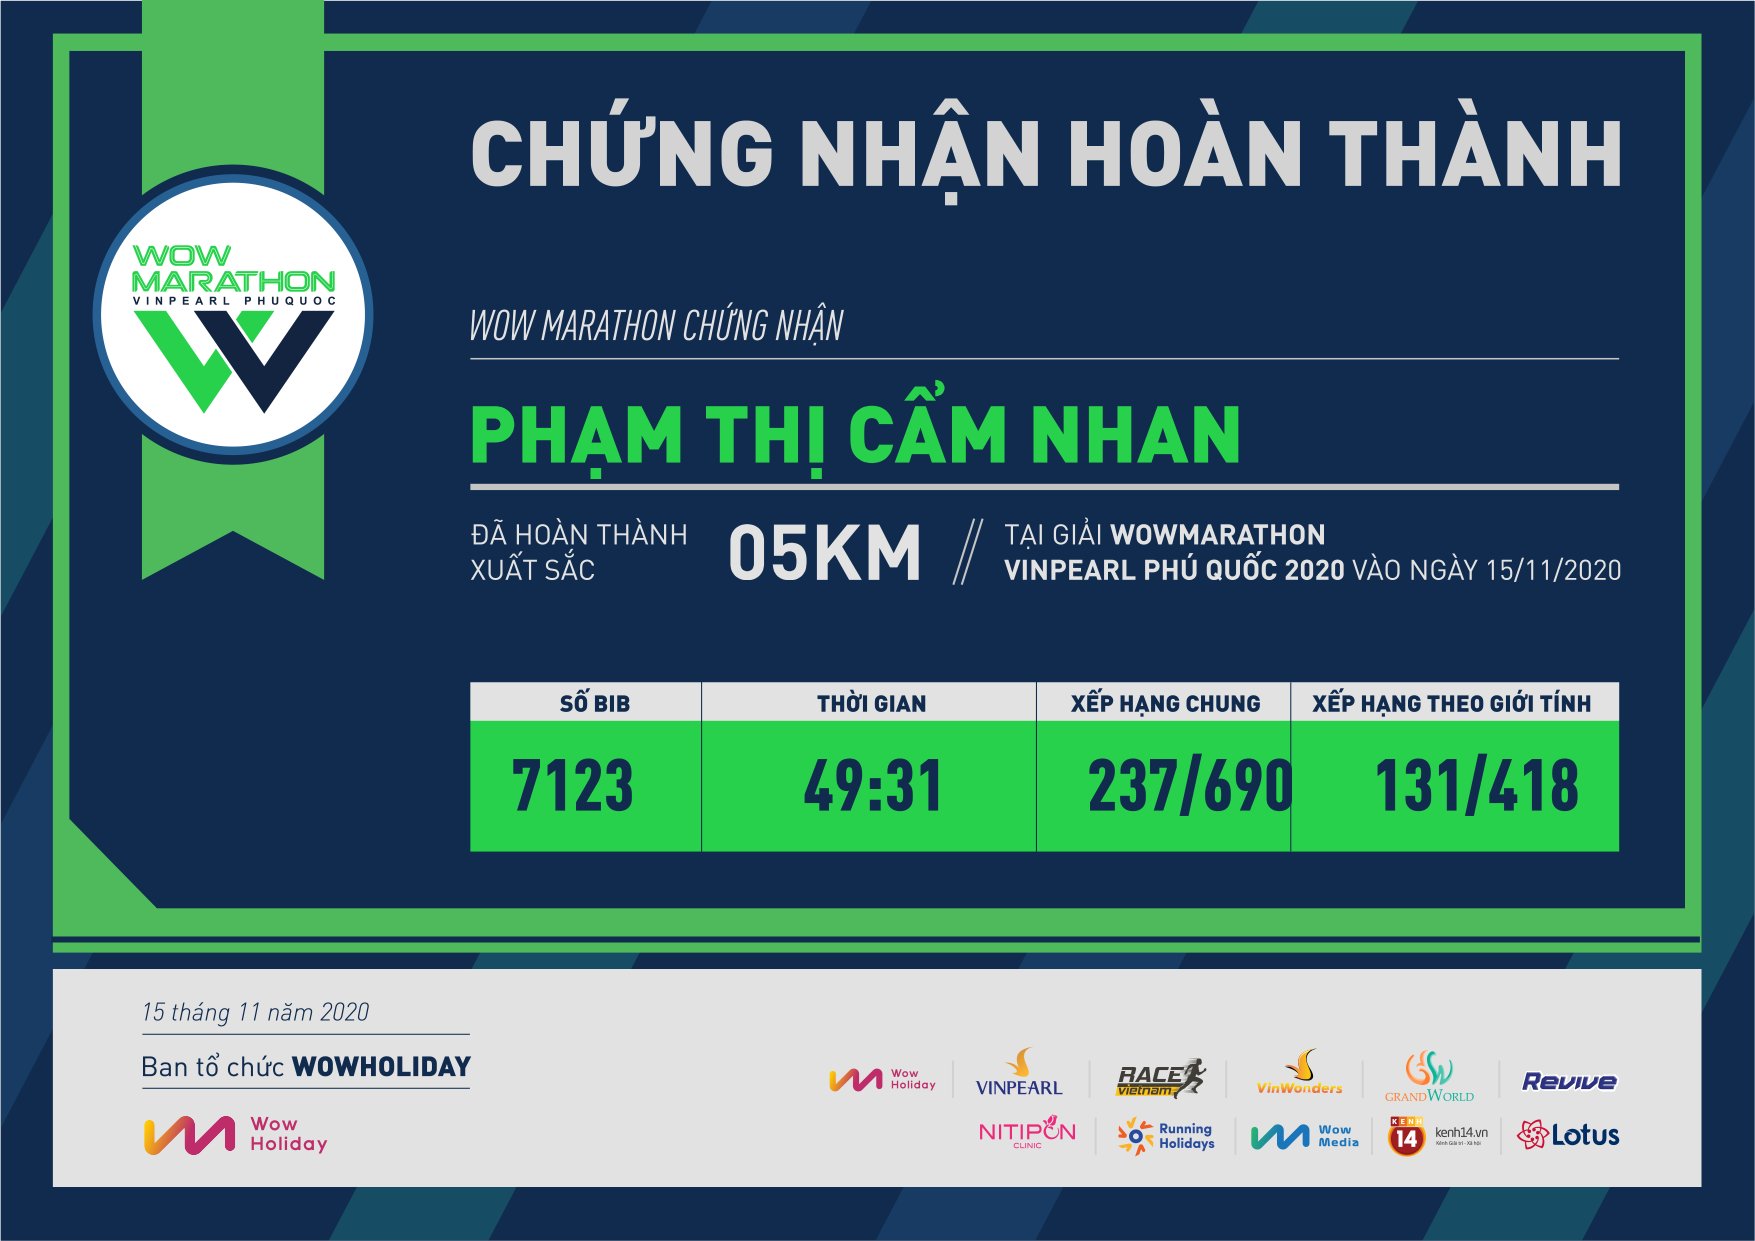 7123 - Phạm Thị Cẩm Nhan